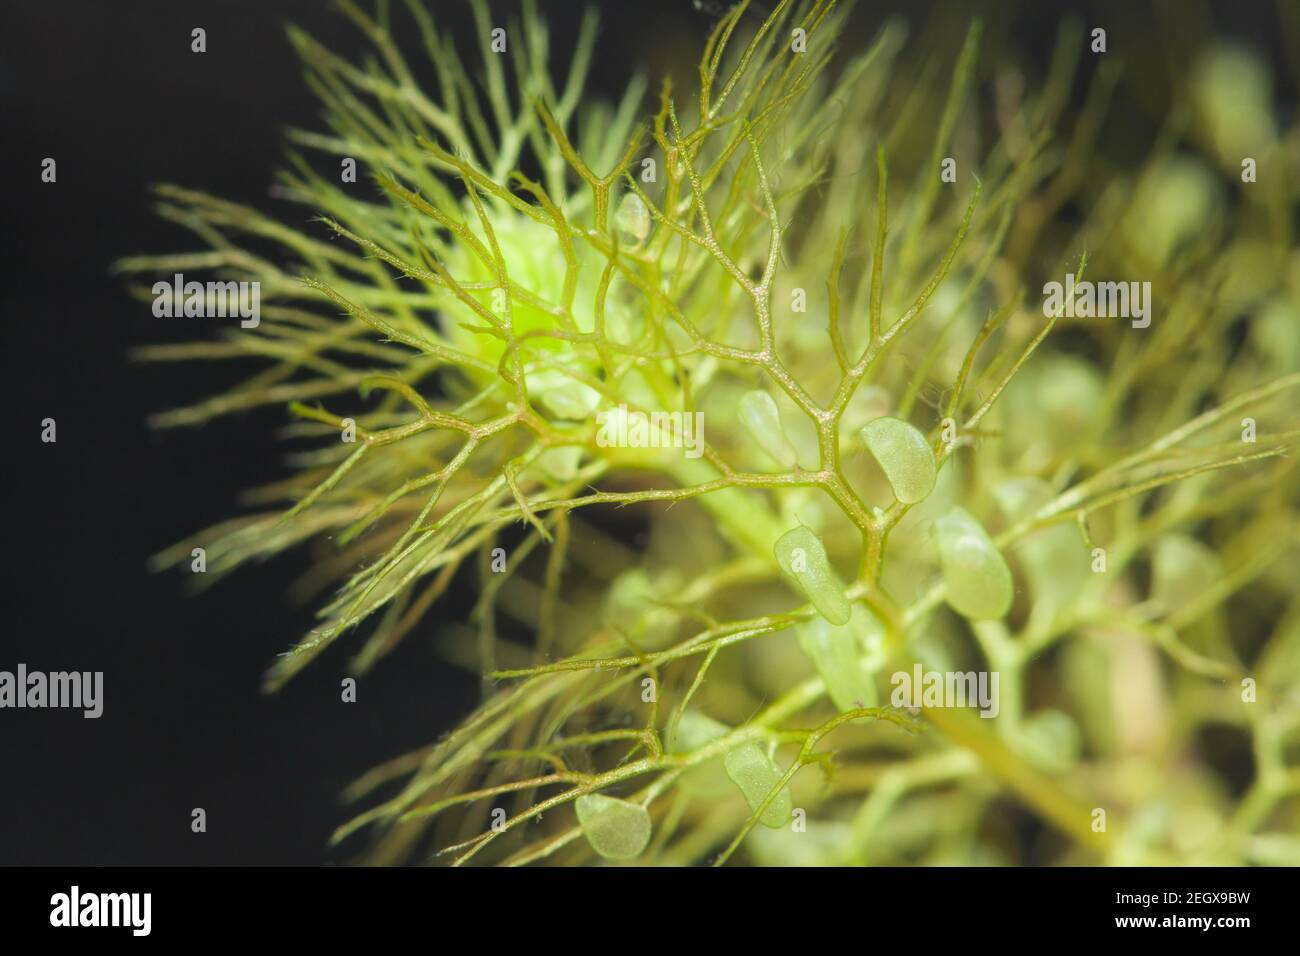 Greater bladderwort (Utricularia vulgaris) Stock Photo